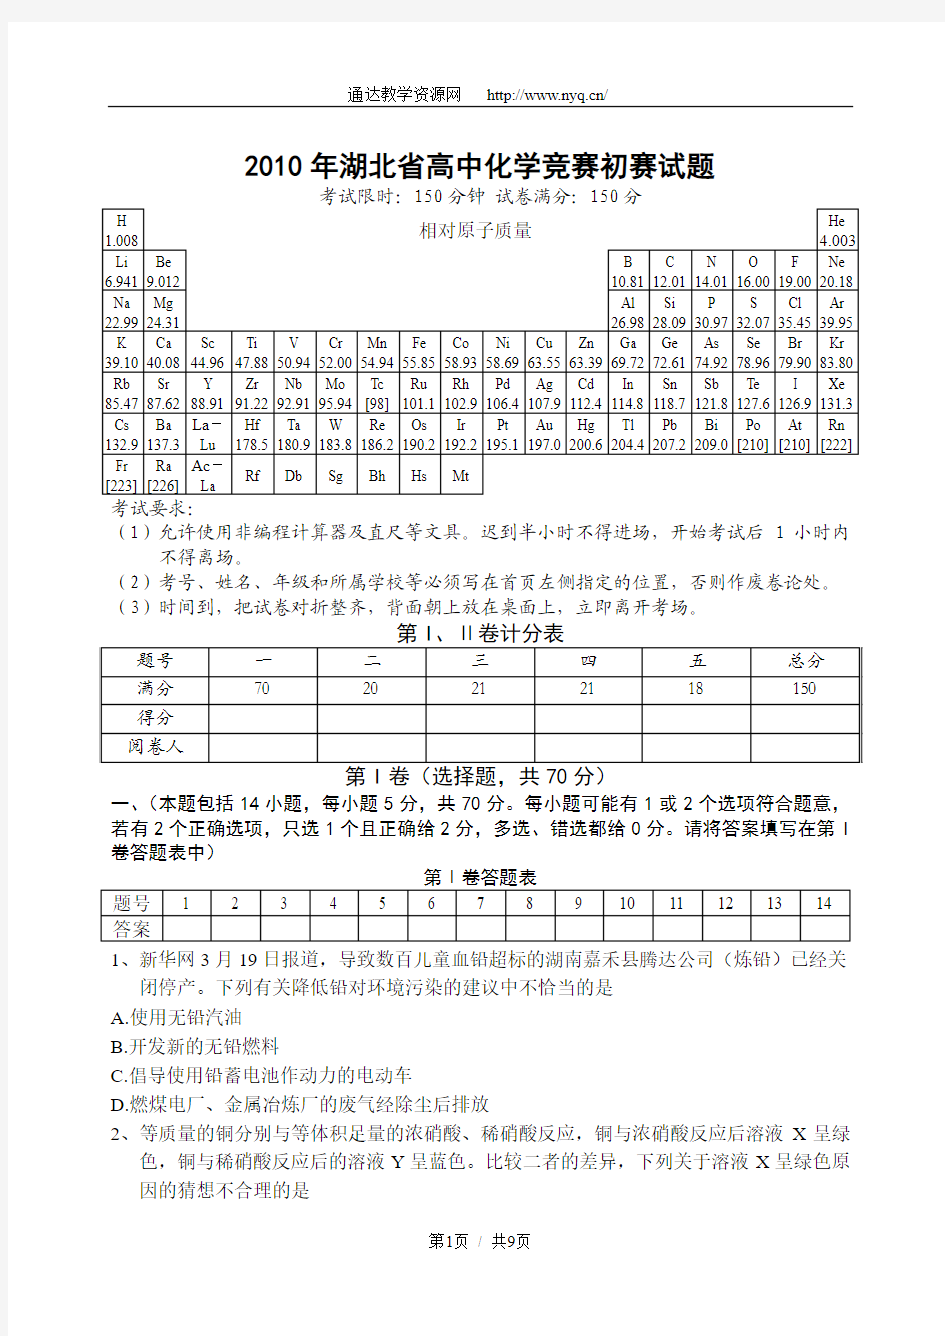 2010年湖北省高中化学竞赛初赛试题、答案及评分标准(完整word版)